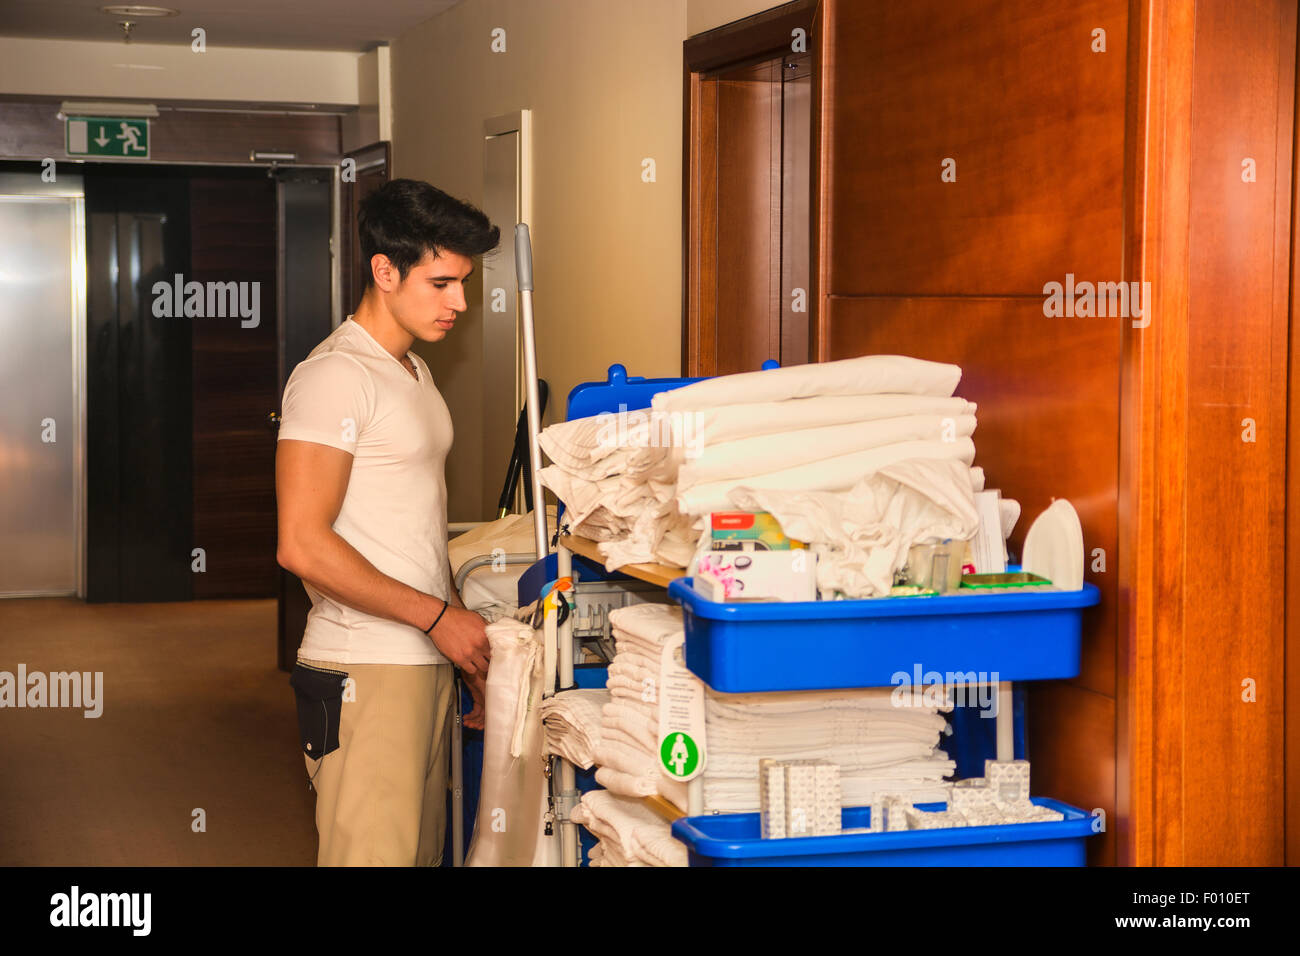 Junger Mann schob einen Haushalt Wagen beladen mit saubere Handtücher, Wäsche und Reinigungsgeräte in einem Hotel, als er das Zimmer services Stockfoto